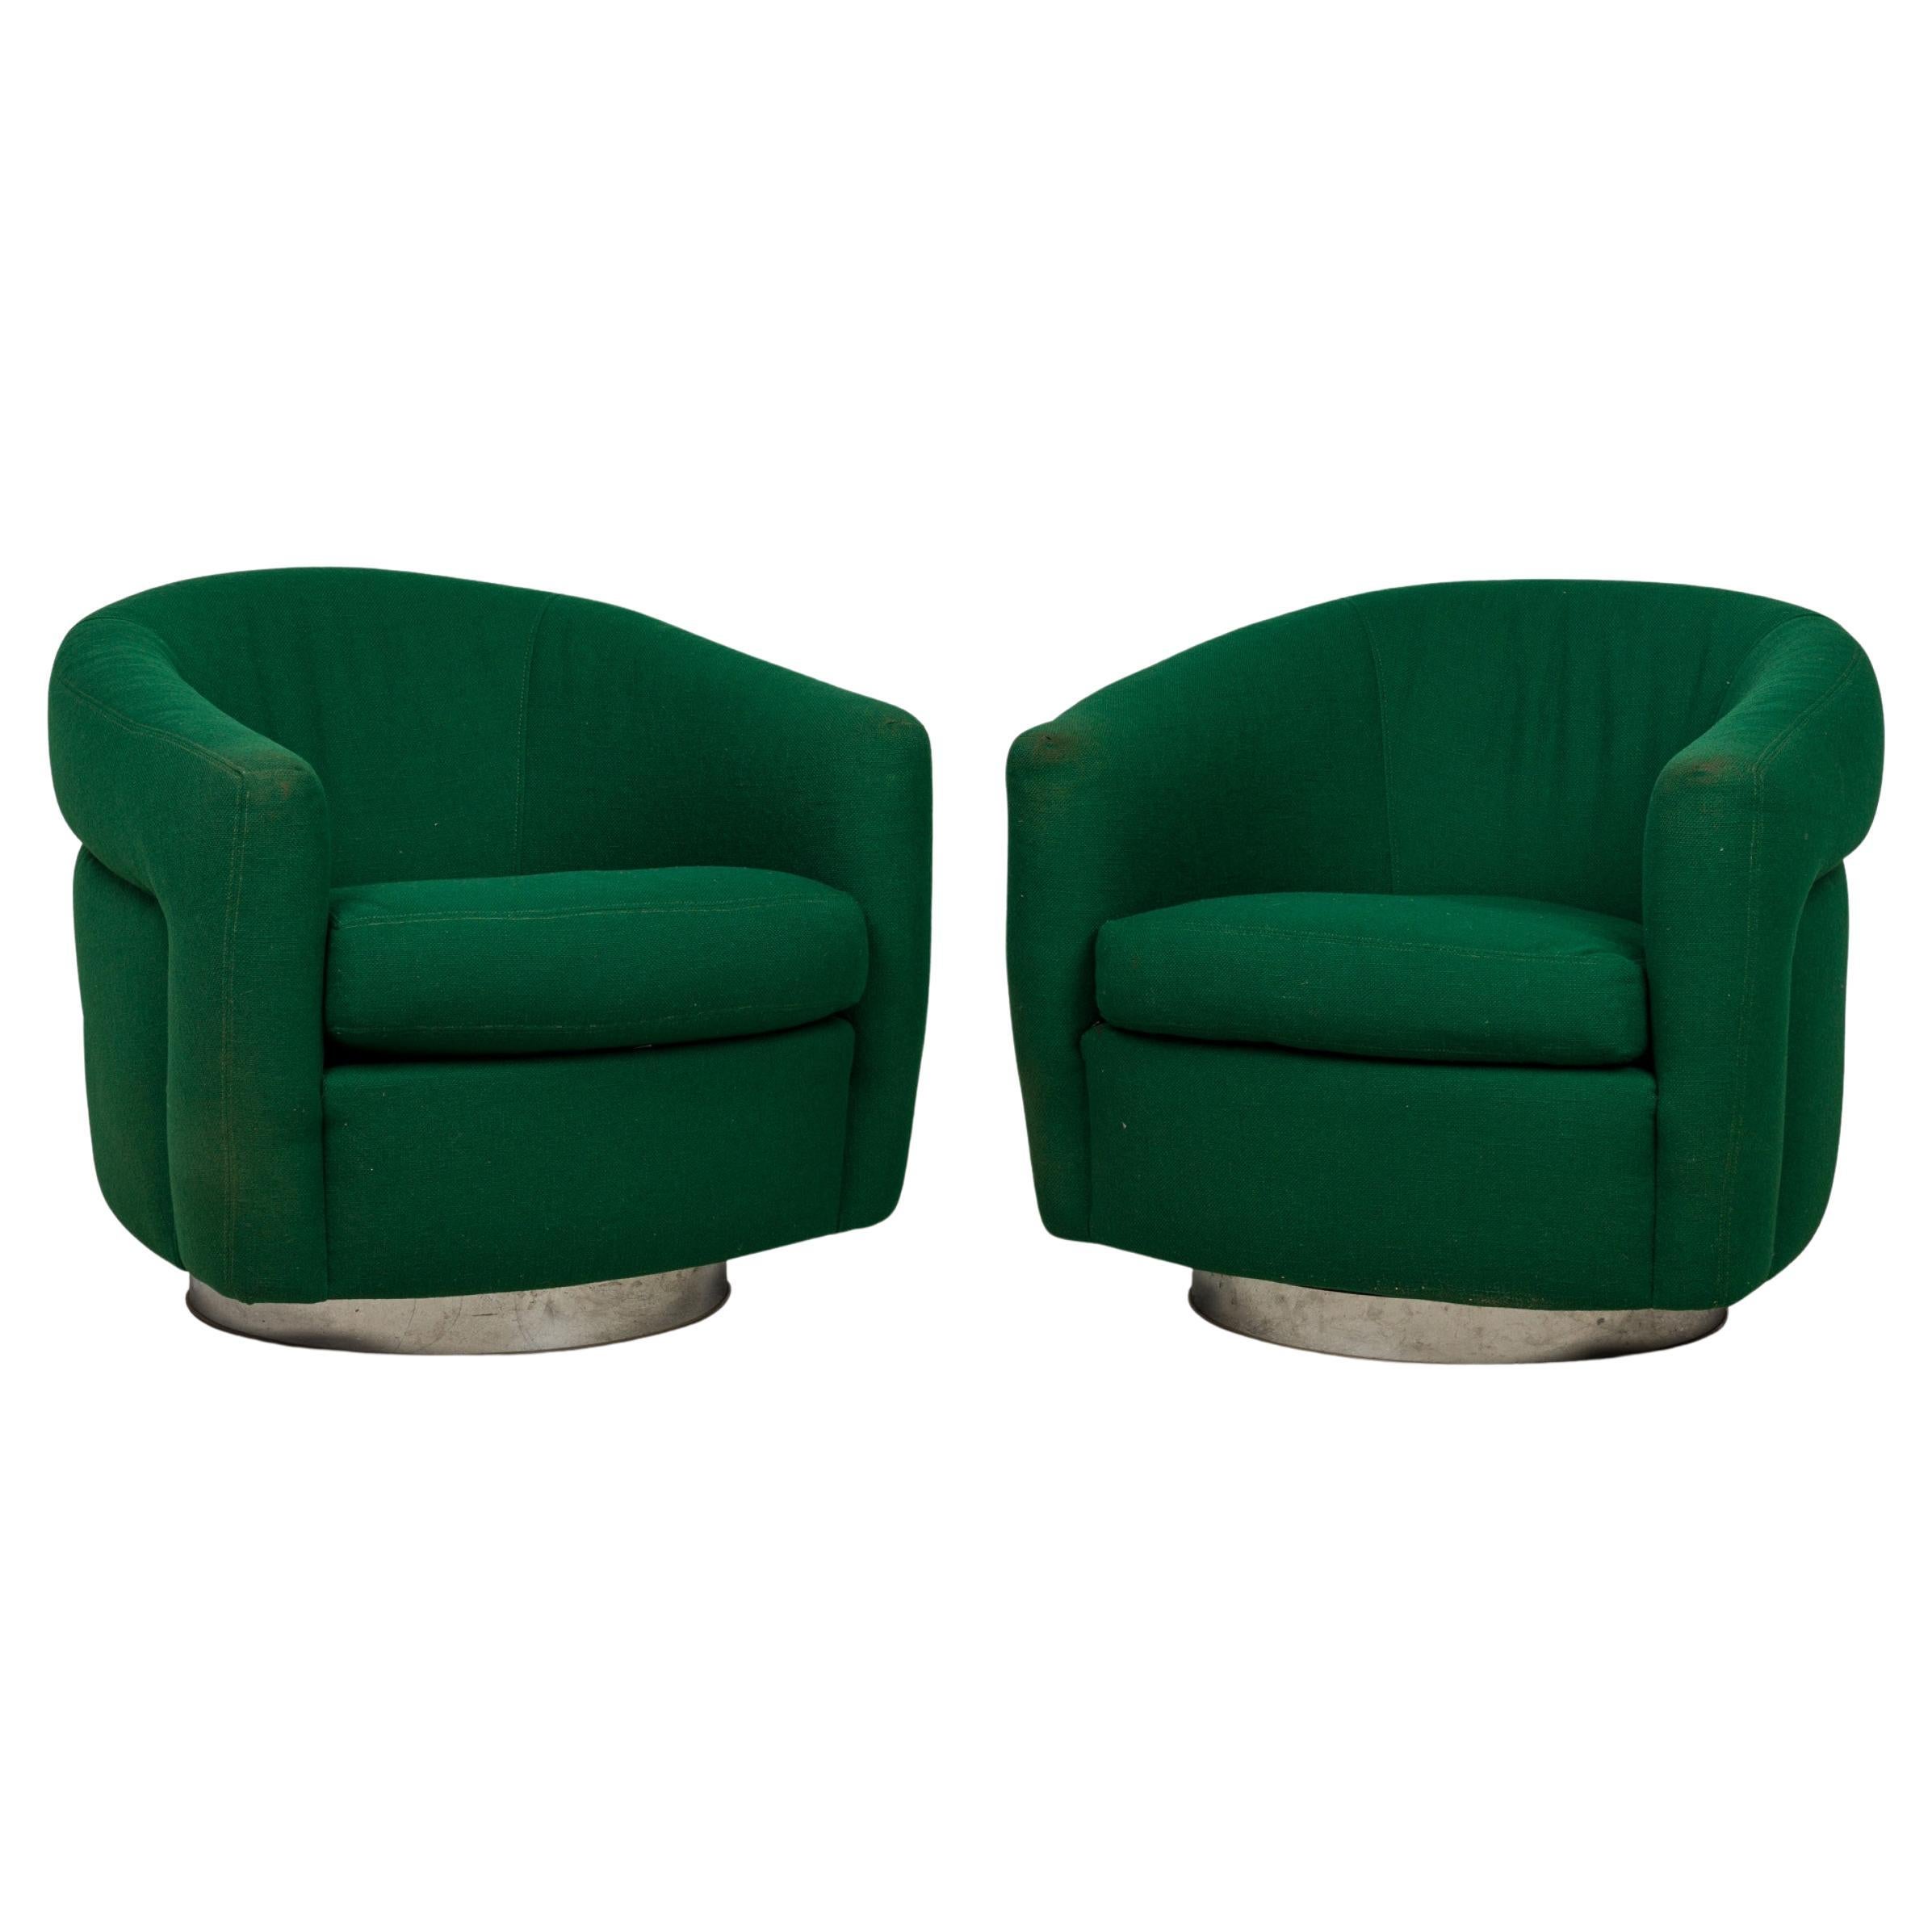 Paire de fauteuils pivotants et inclinables Milo Baughman, vert émeraude, rembourrés